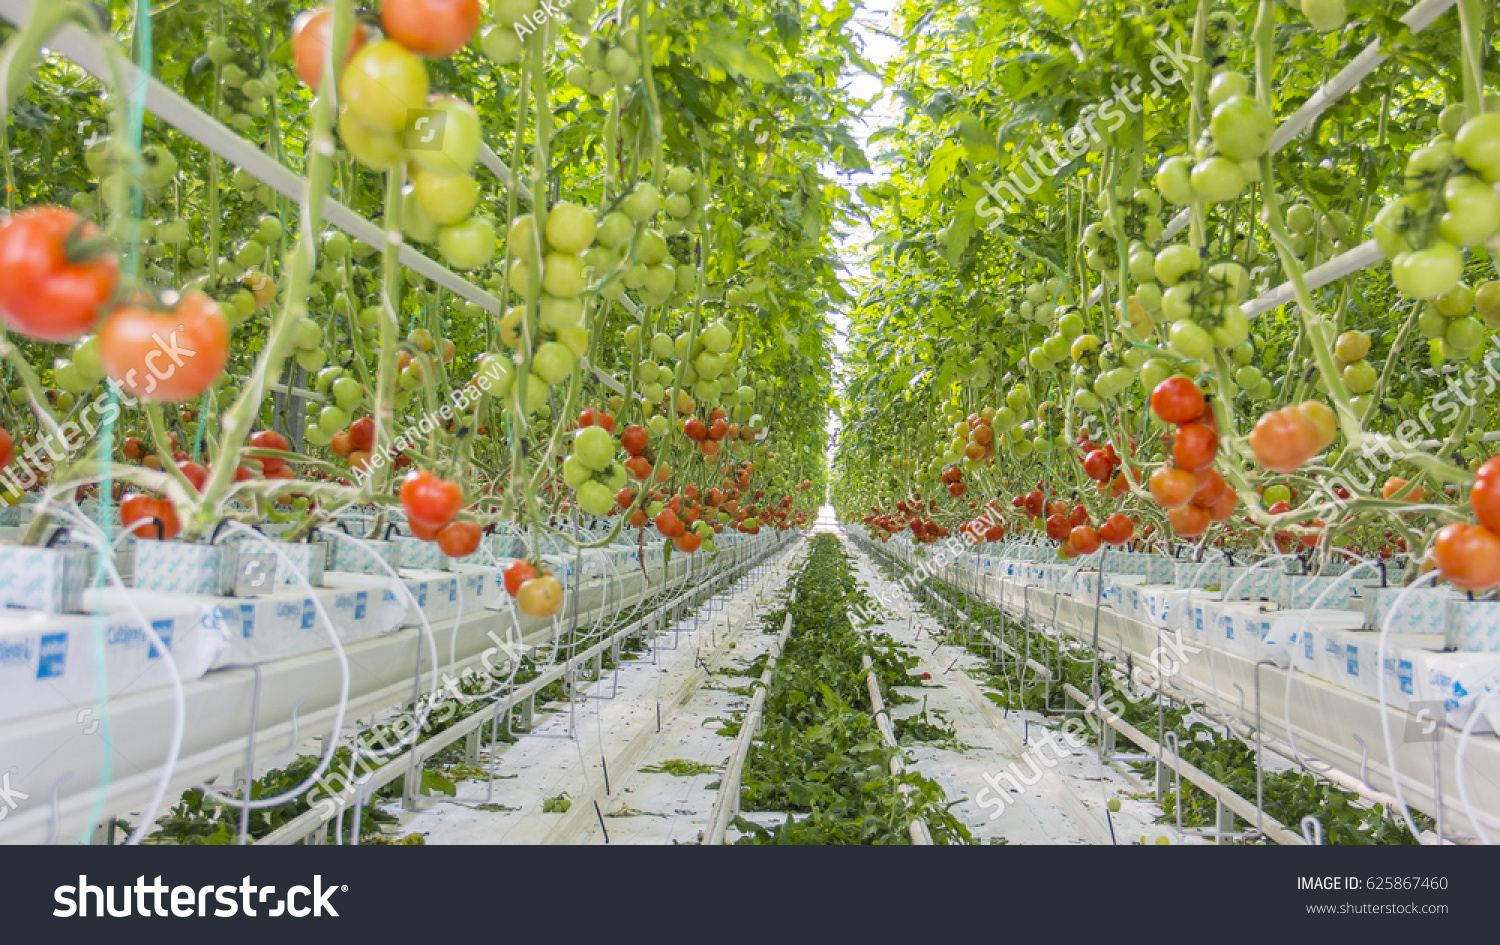 Методы выращивания помидоров. Томаты черри гидропоника. Томат Мерлис в промышленной теплице. Голландия гидропонные томаты. Помидоры на гидропонике в теплице.